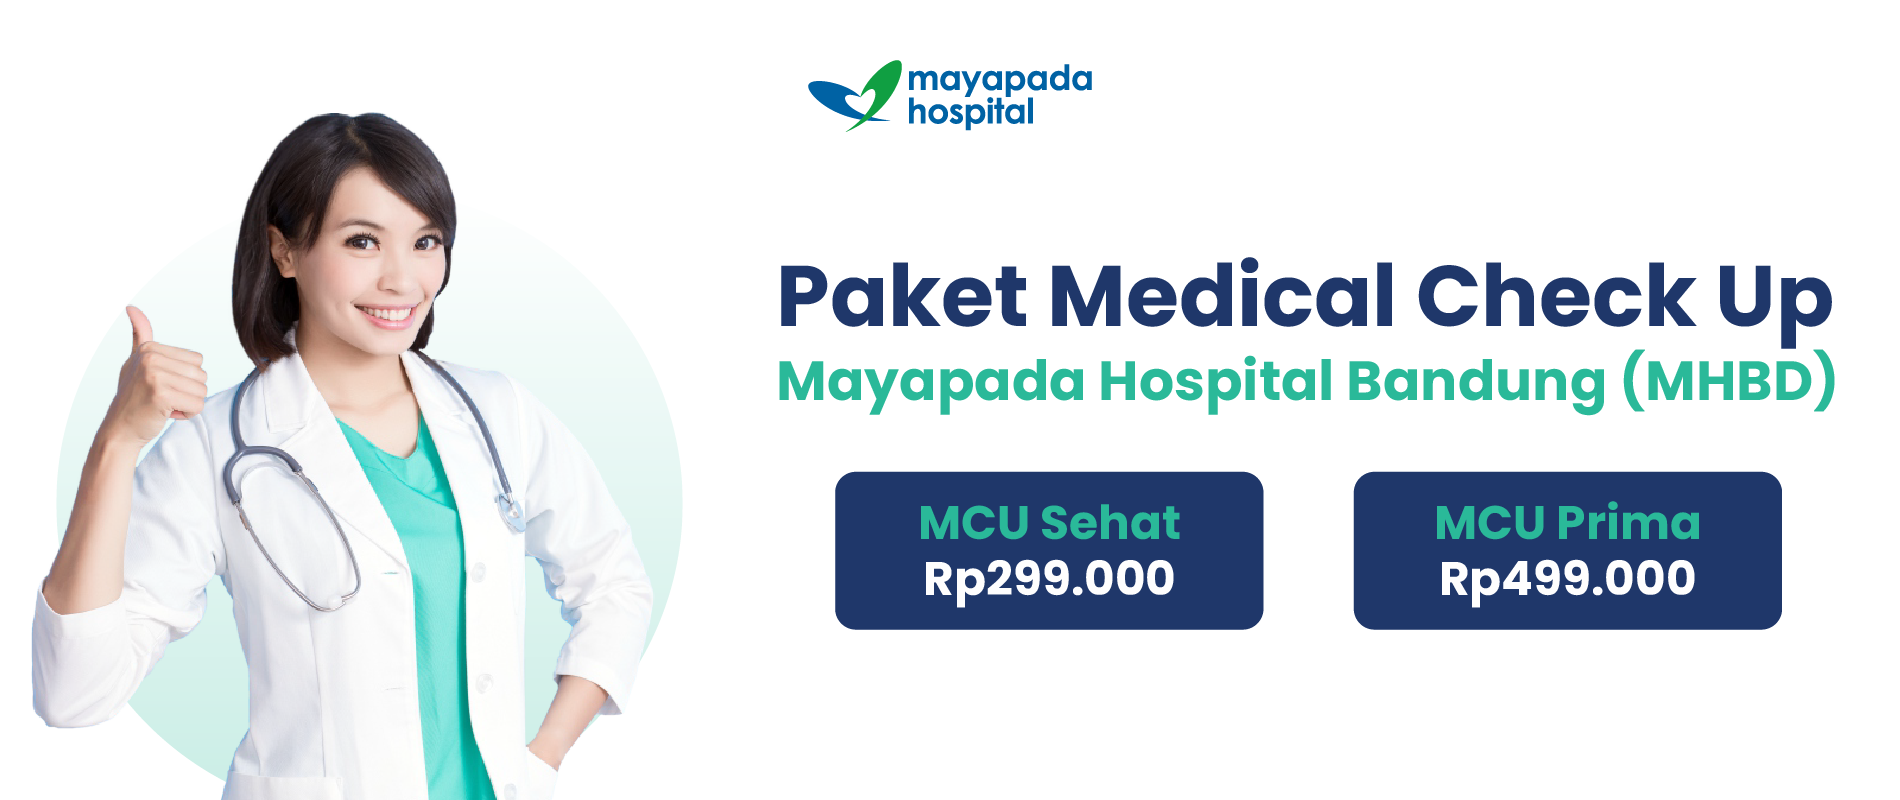 Paket Medical Check Up Mayapada Hospital Bandung (MHBD) IMG